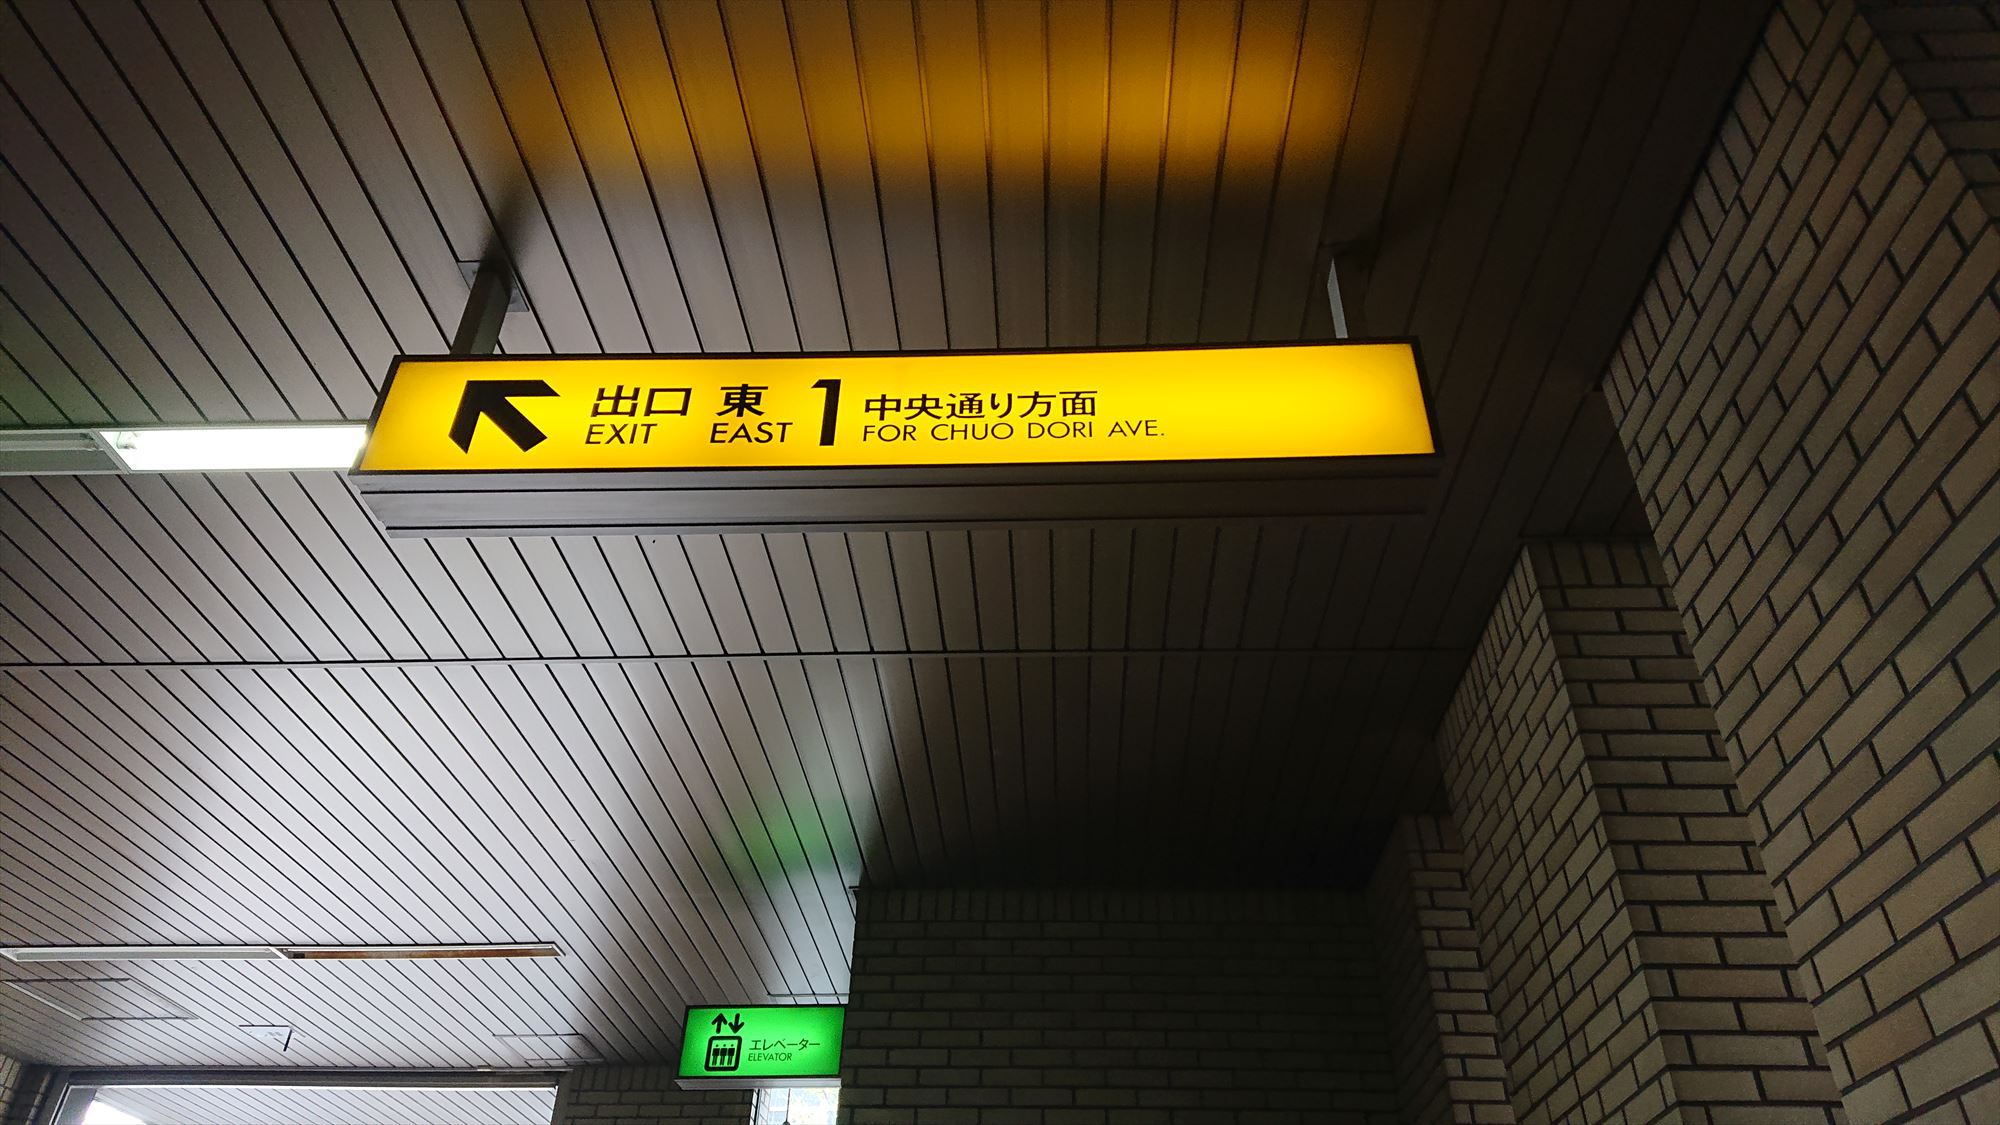 地下鉄広瀬通駅東1番出口ドーミーイン仙台広瀬通は出口をでて左方向に徒歩約1分